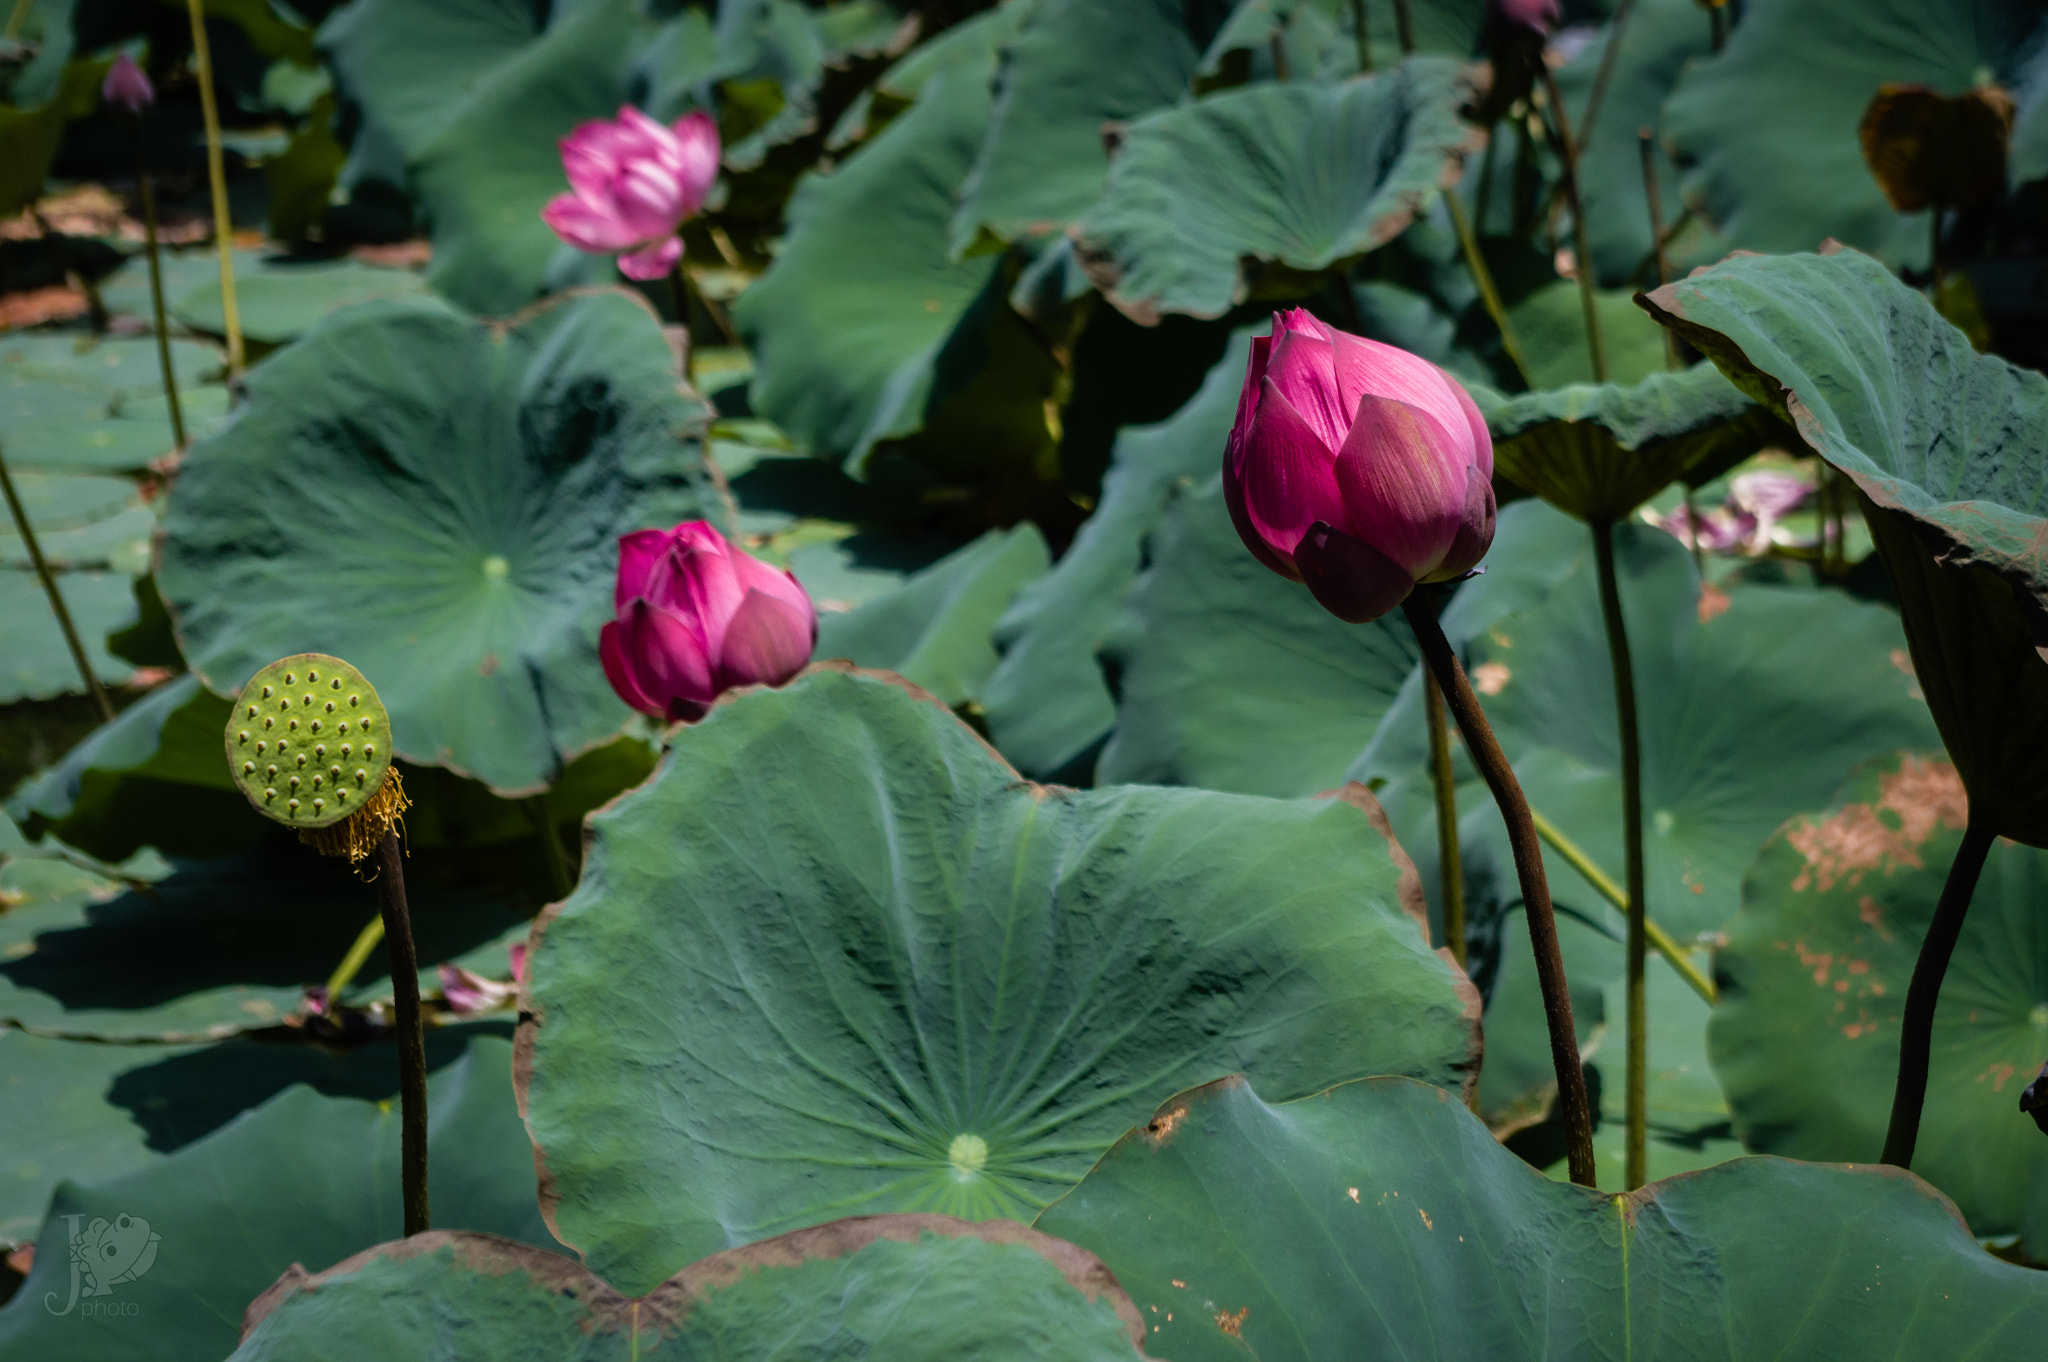 Pentax K-3 sample photo. Fleurs de lotus dans la douve de la cité impériale de hué photography